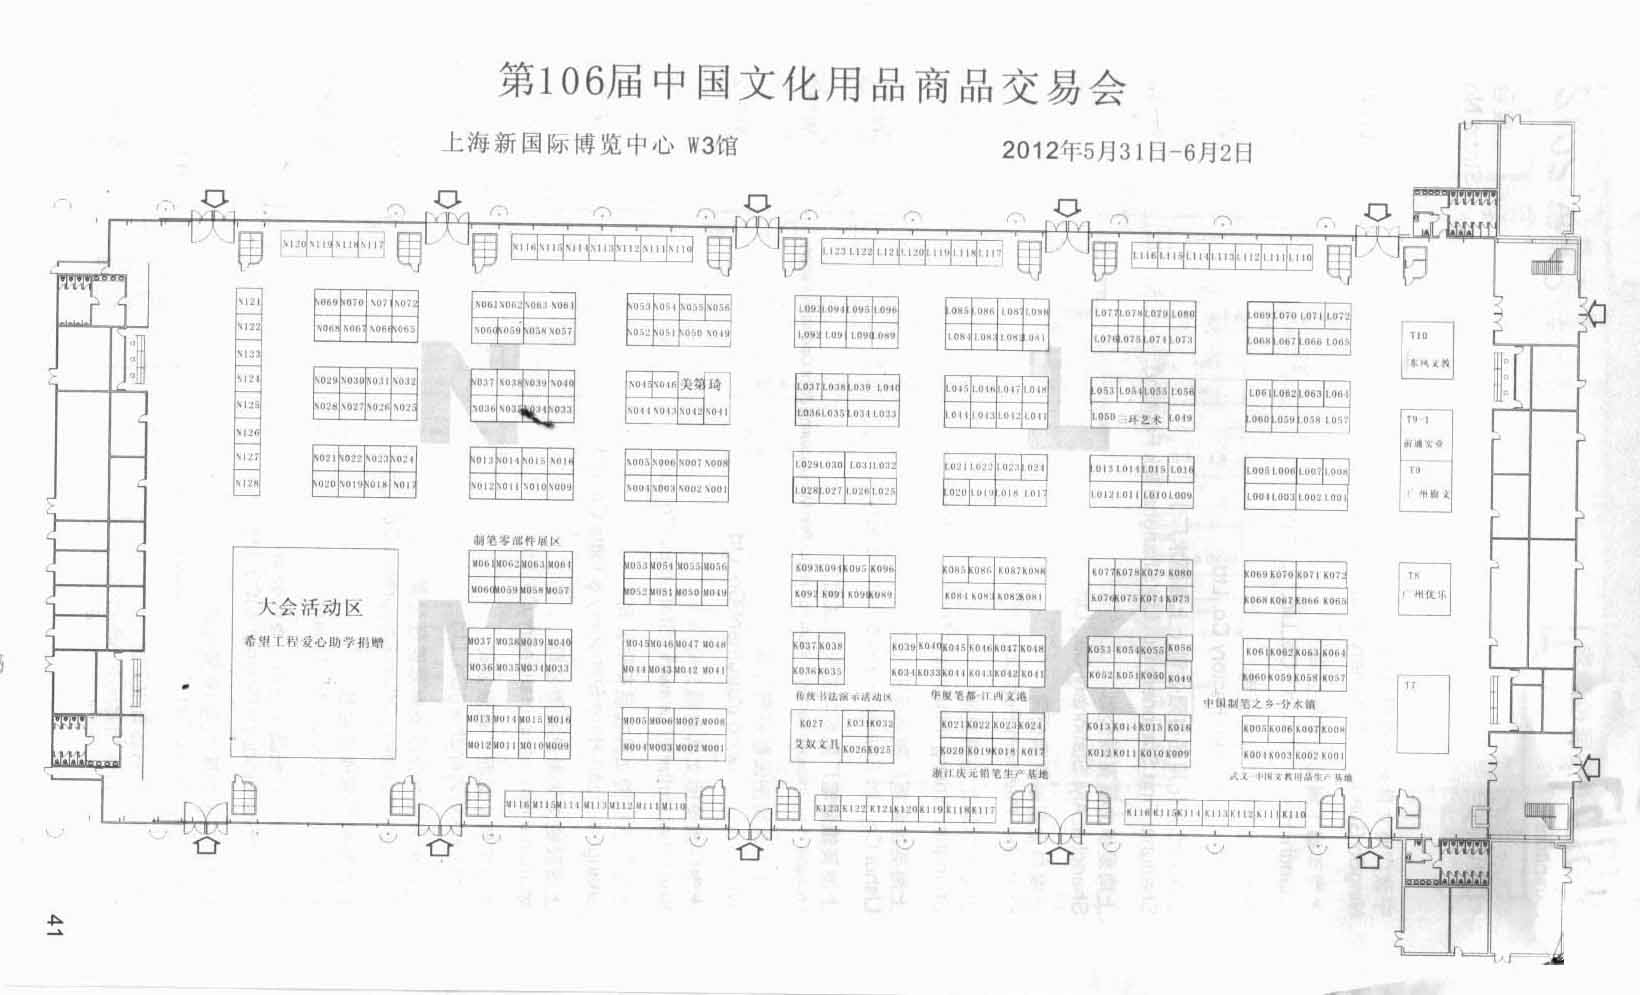 2012CSF第106届中国文化用品商品交易会暨中国国际制笔文具博览会的平面图